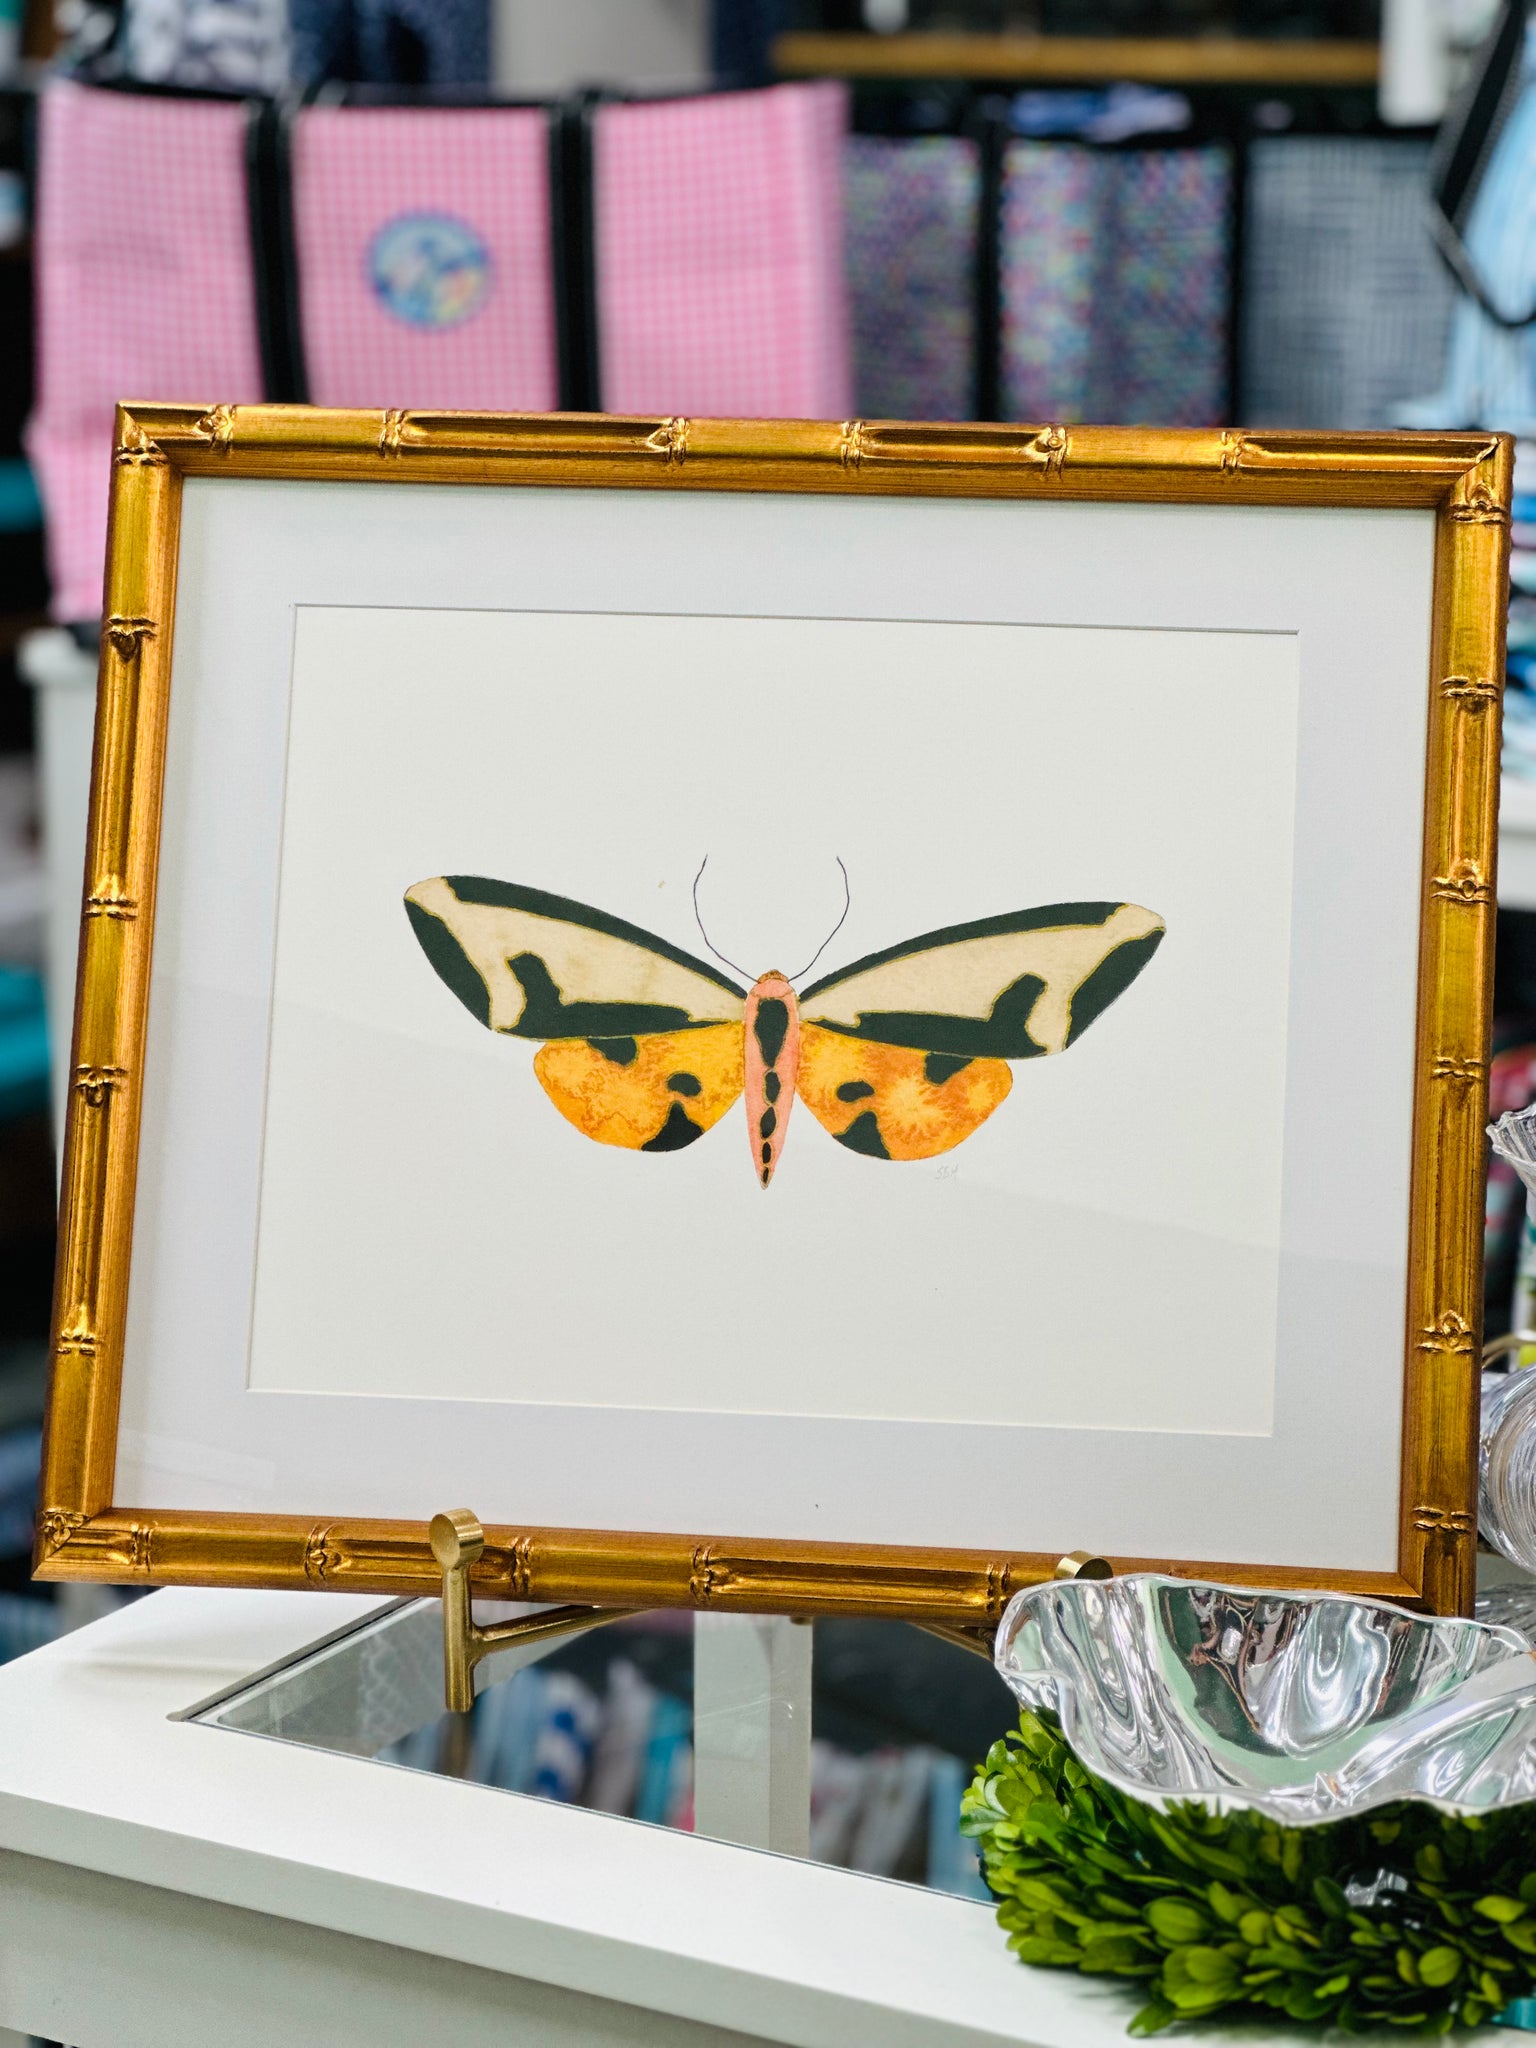 Moth #10 Framed Art Print